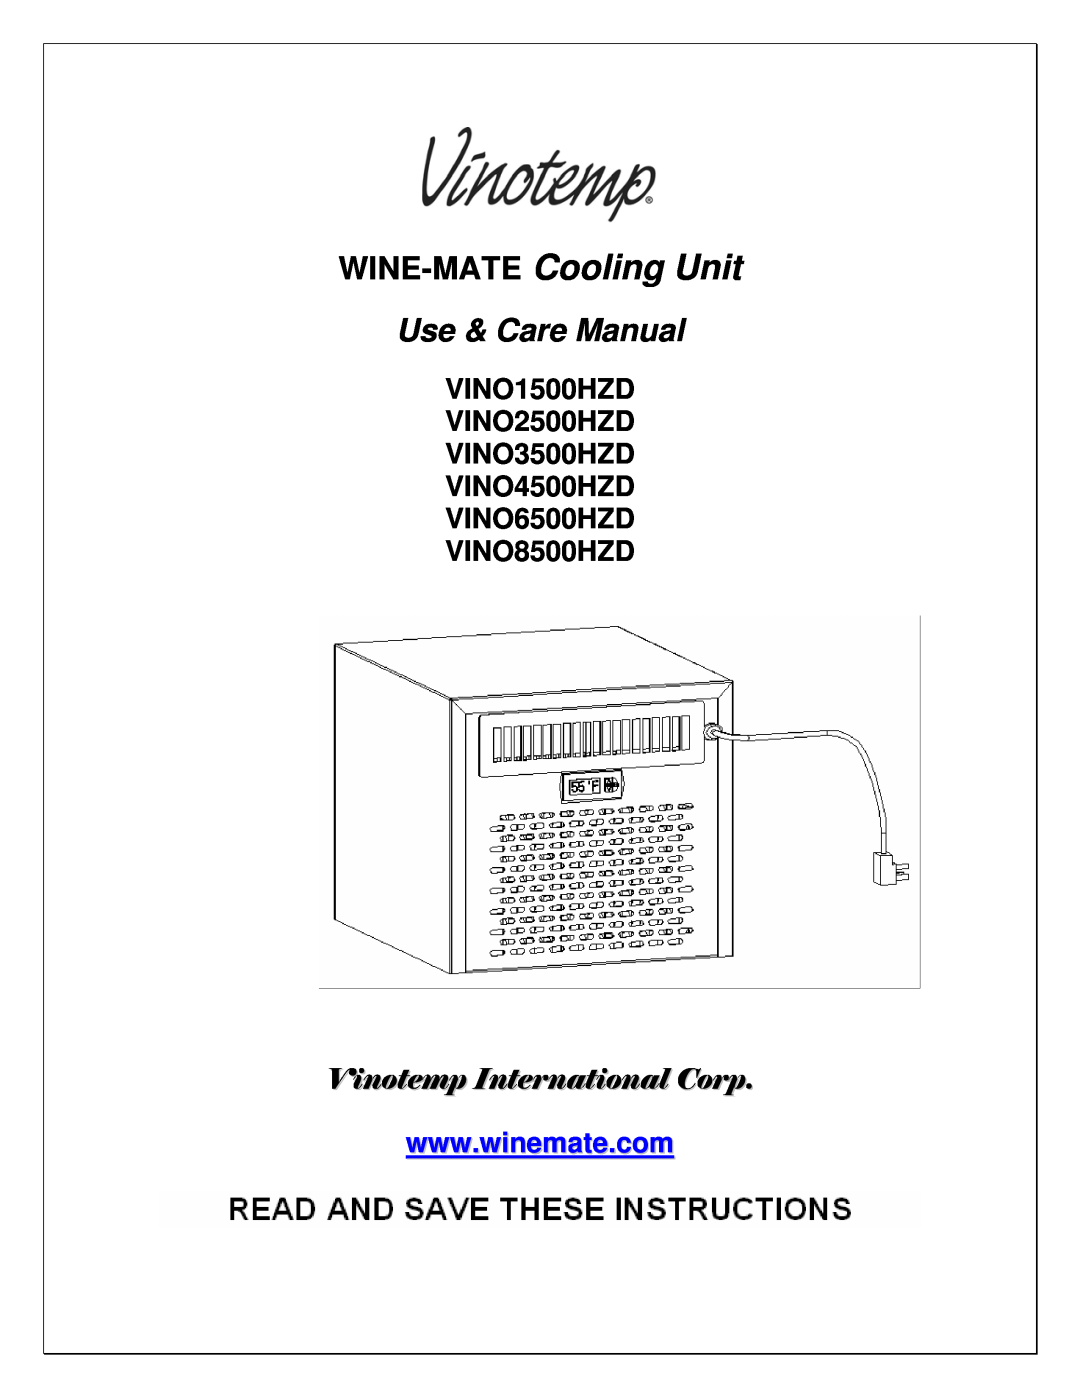 Vinotemp manual VINO1500HZD VINO2500HZD VINO3500HZD VINO4500HZD, VINO6500HZD VINO8500HZD, WINE-MATE Cooling Unit 